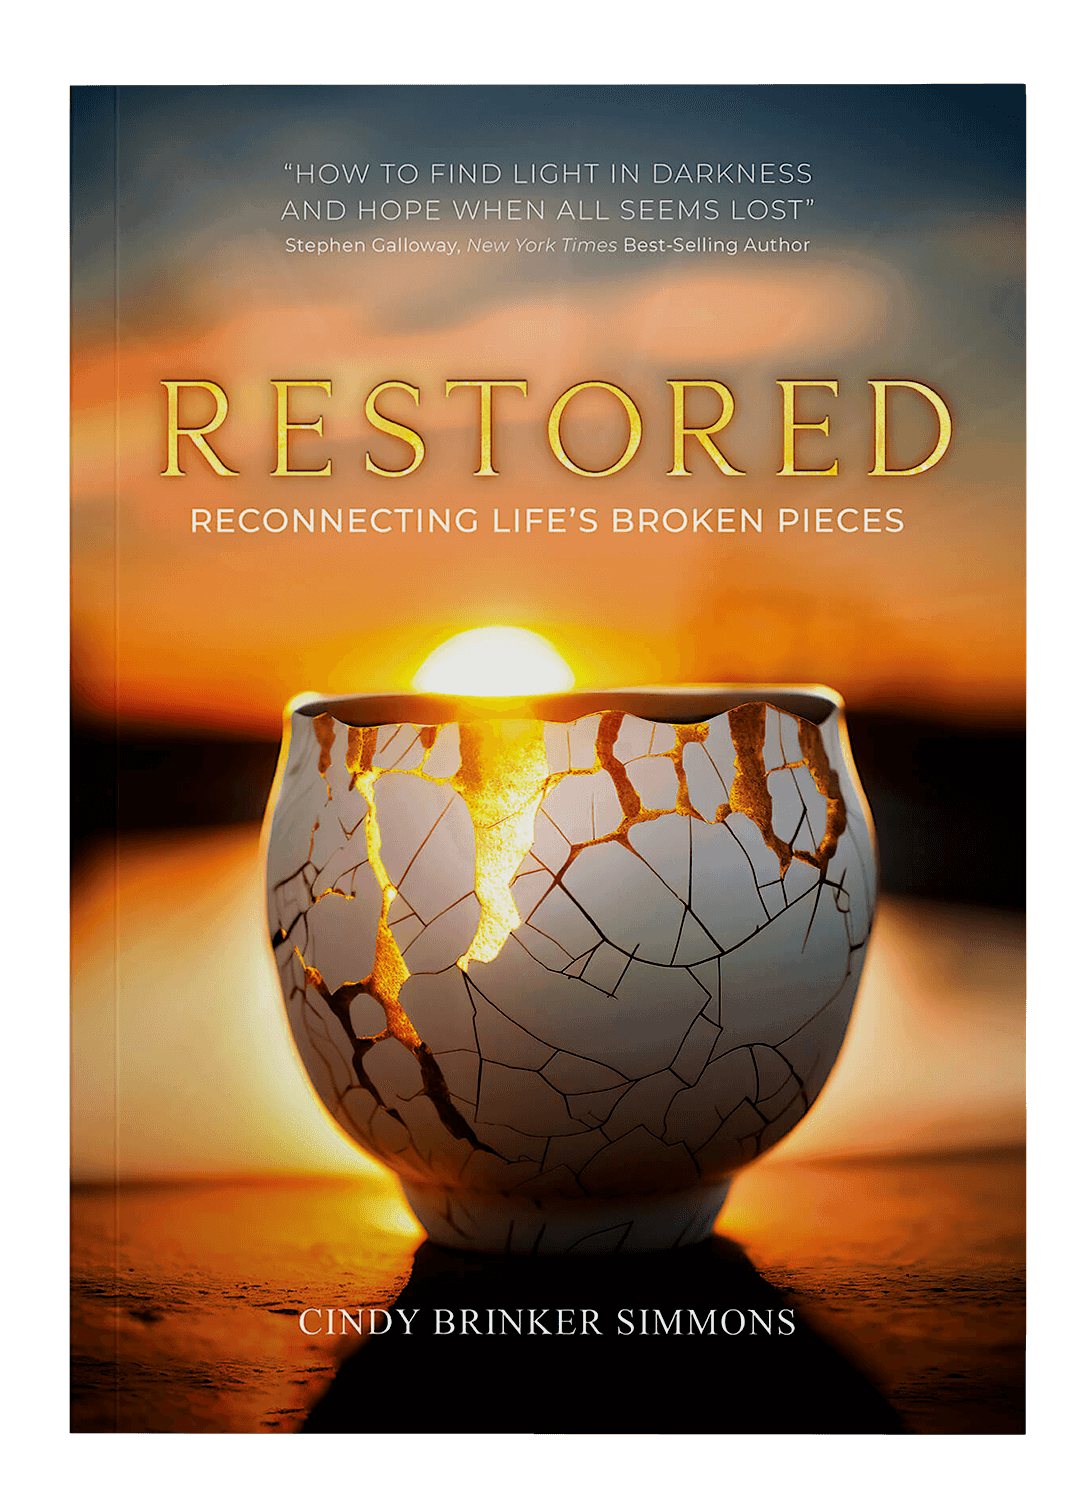 RESTORED: Reconnecting Life's Broken Pieces